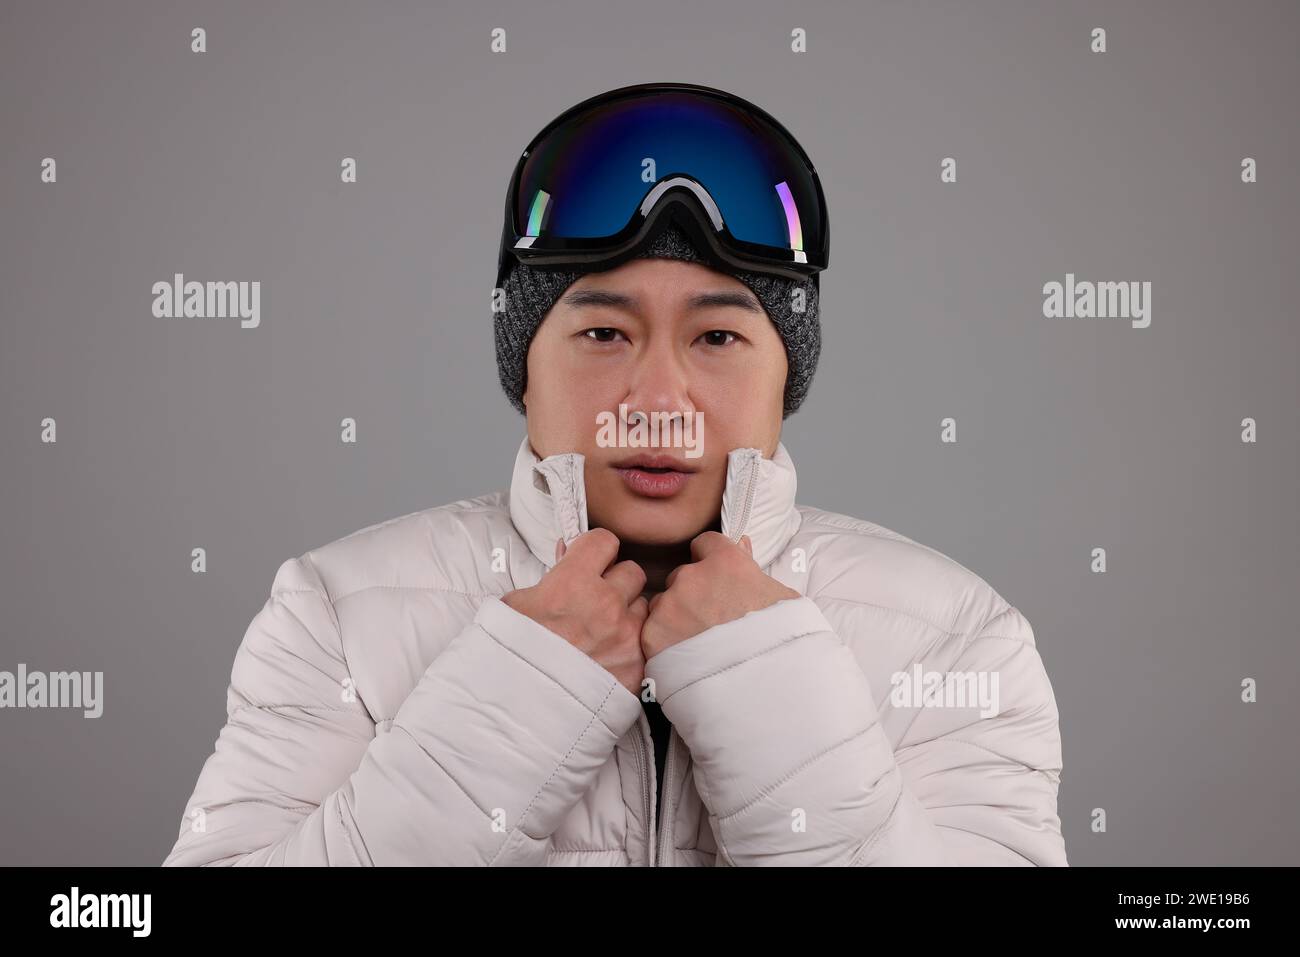 Deportes de invierno. Hombre con gafas de esquí sobre fondo gris Foto de stock